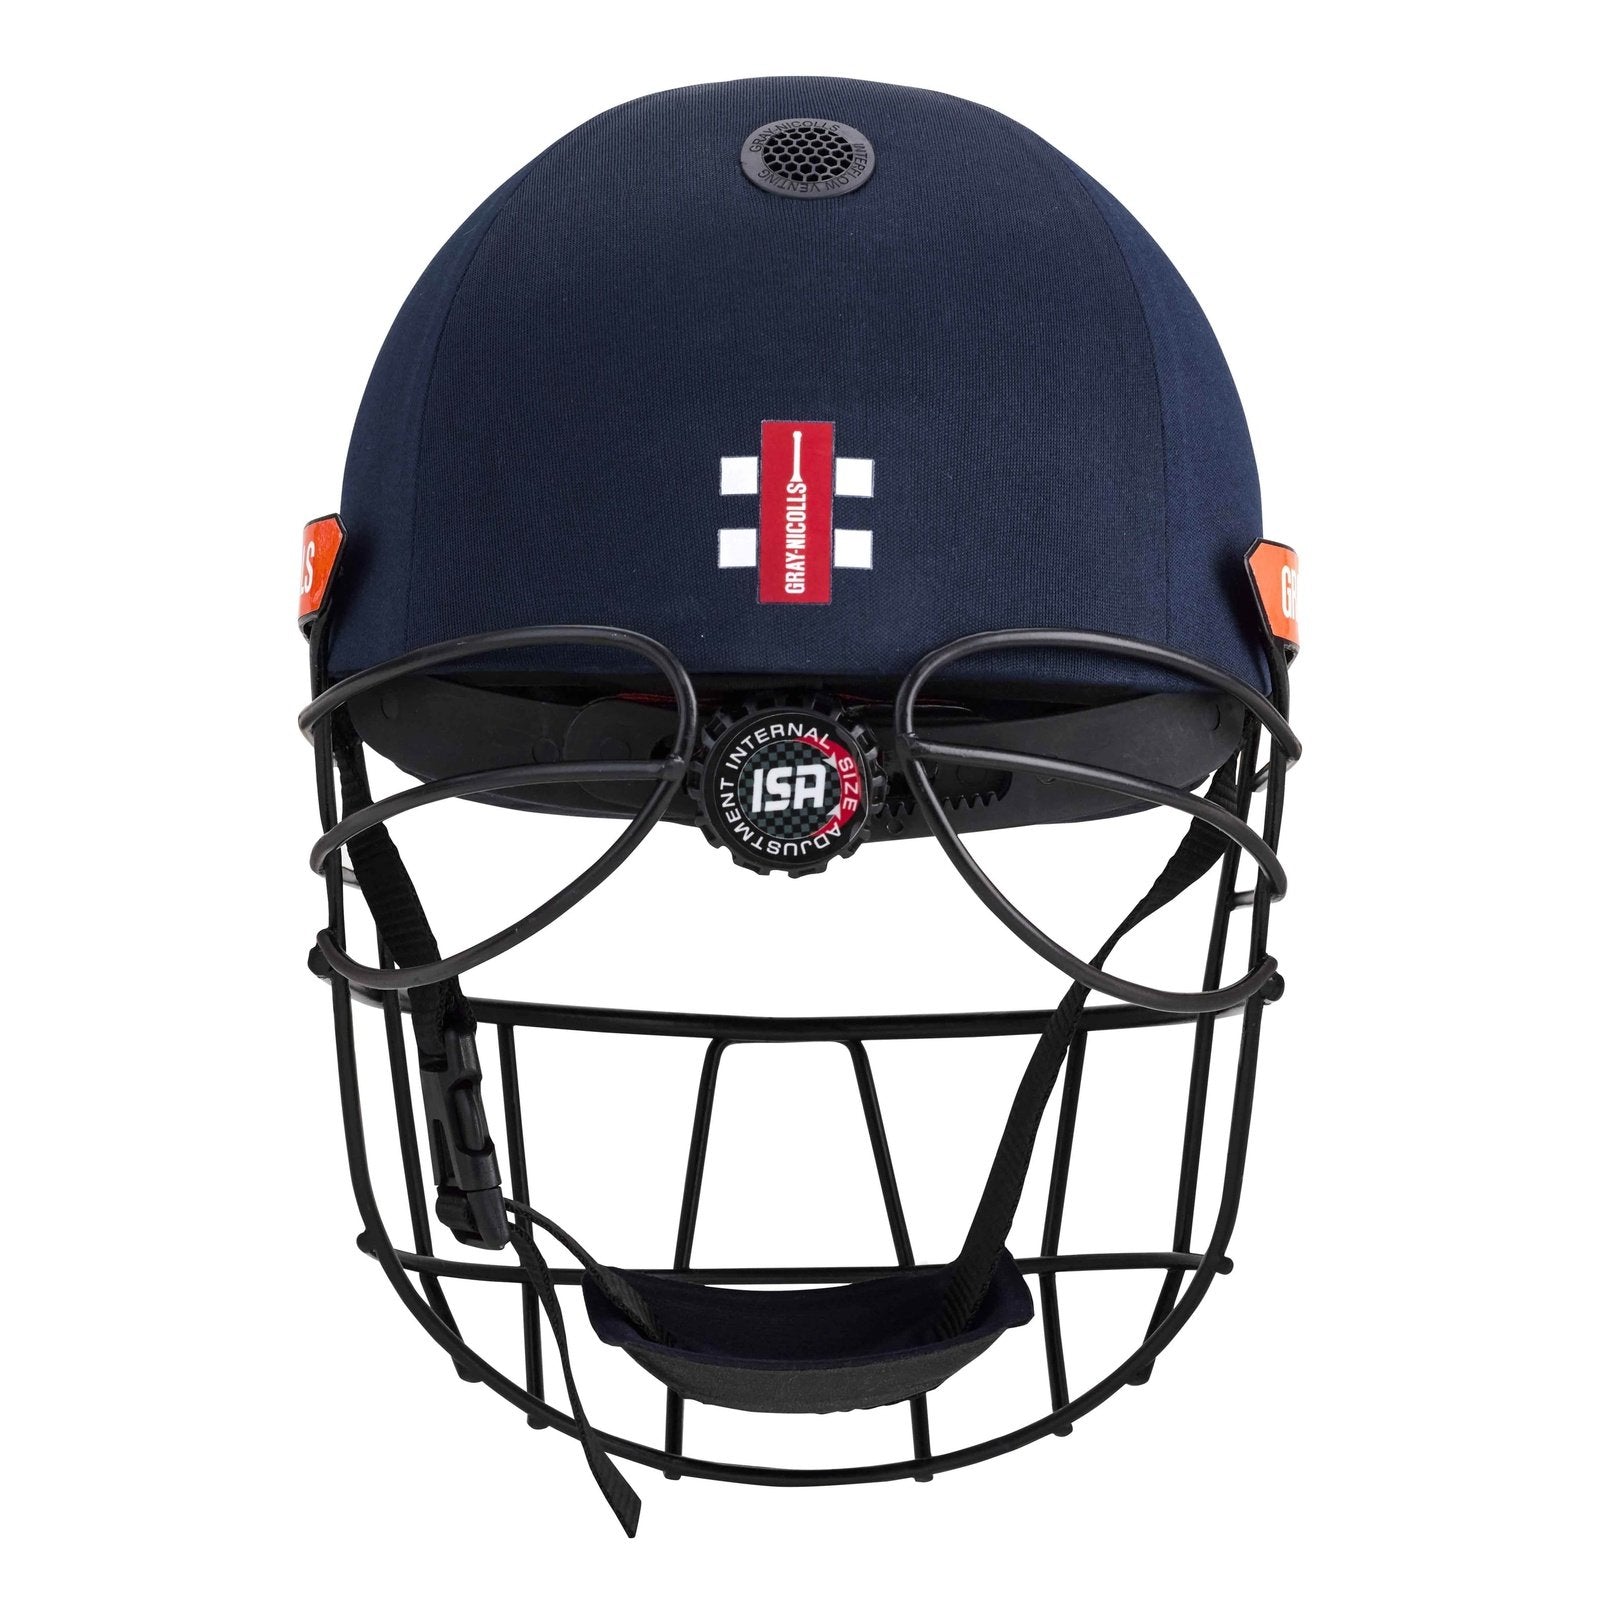 Gray Nicolls Helmet Gray-Nicolls Atomic 360 Cricket Helmet